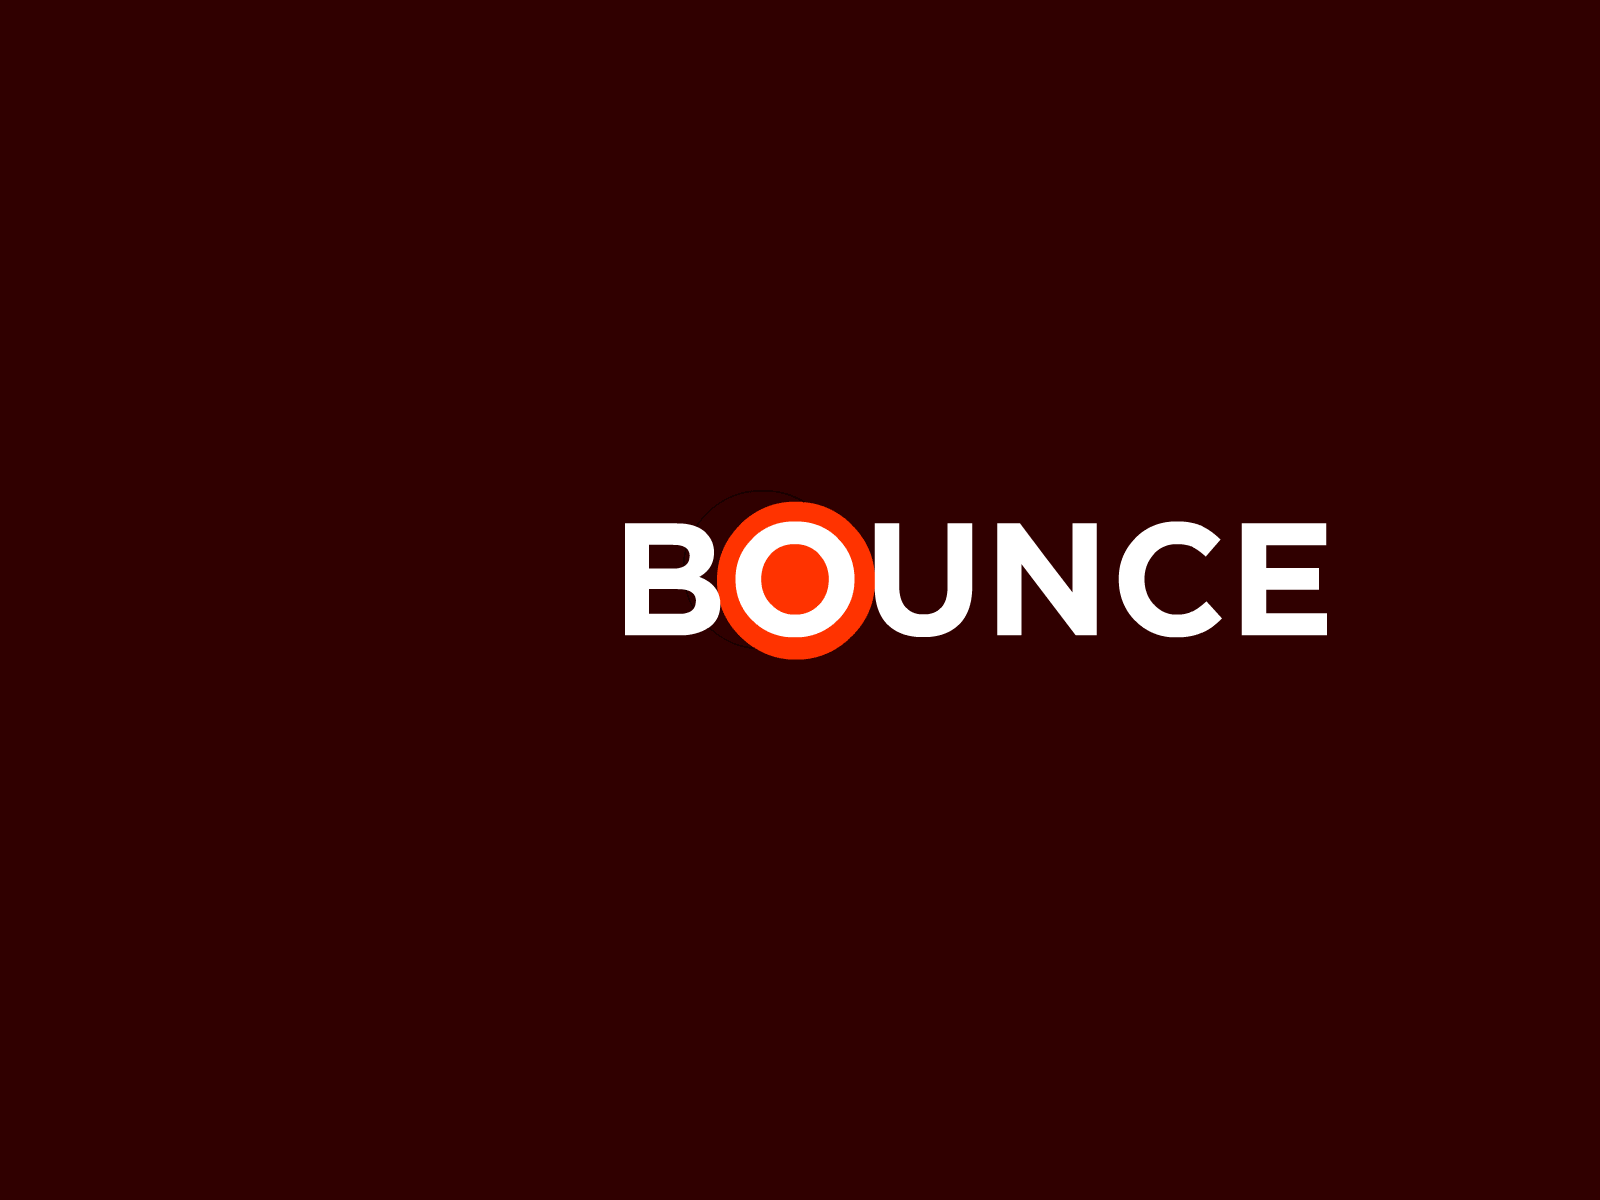 Bounce by Julian Steinmann on Dribbble